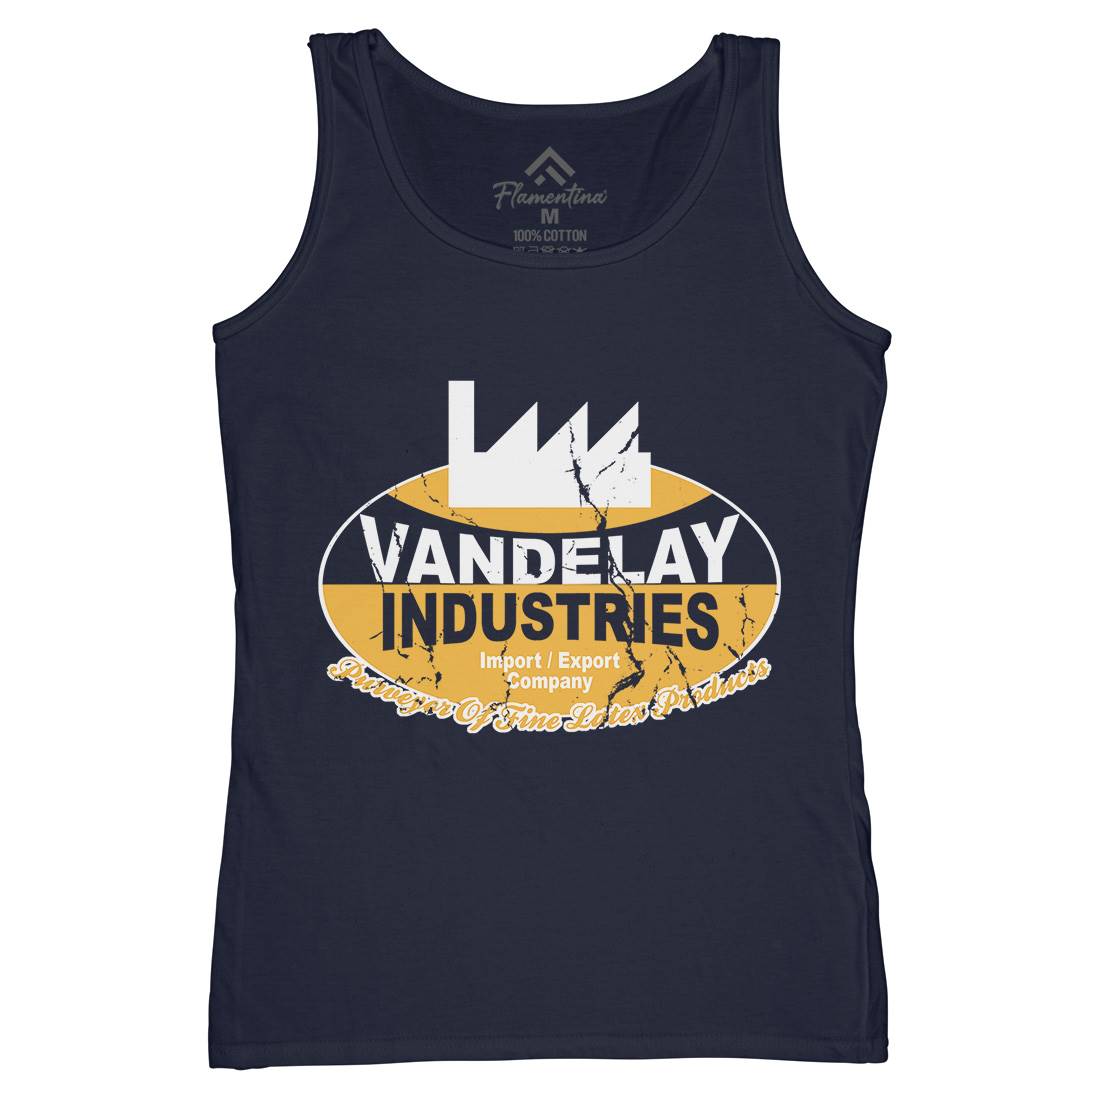 Vandelay Industries Womens Organic Tank Top Vest Retro D165